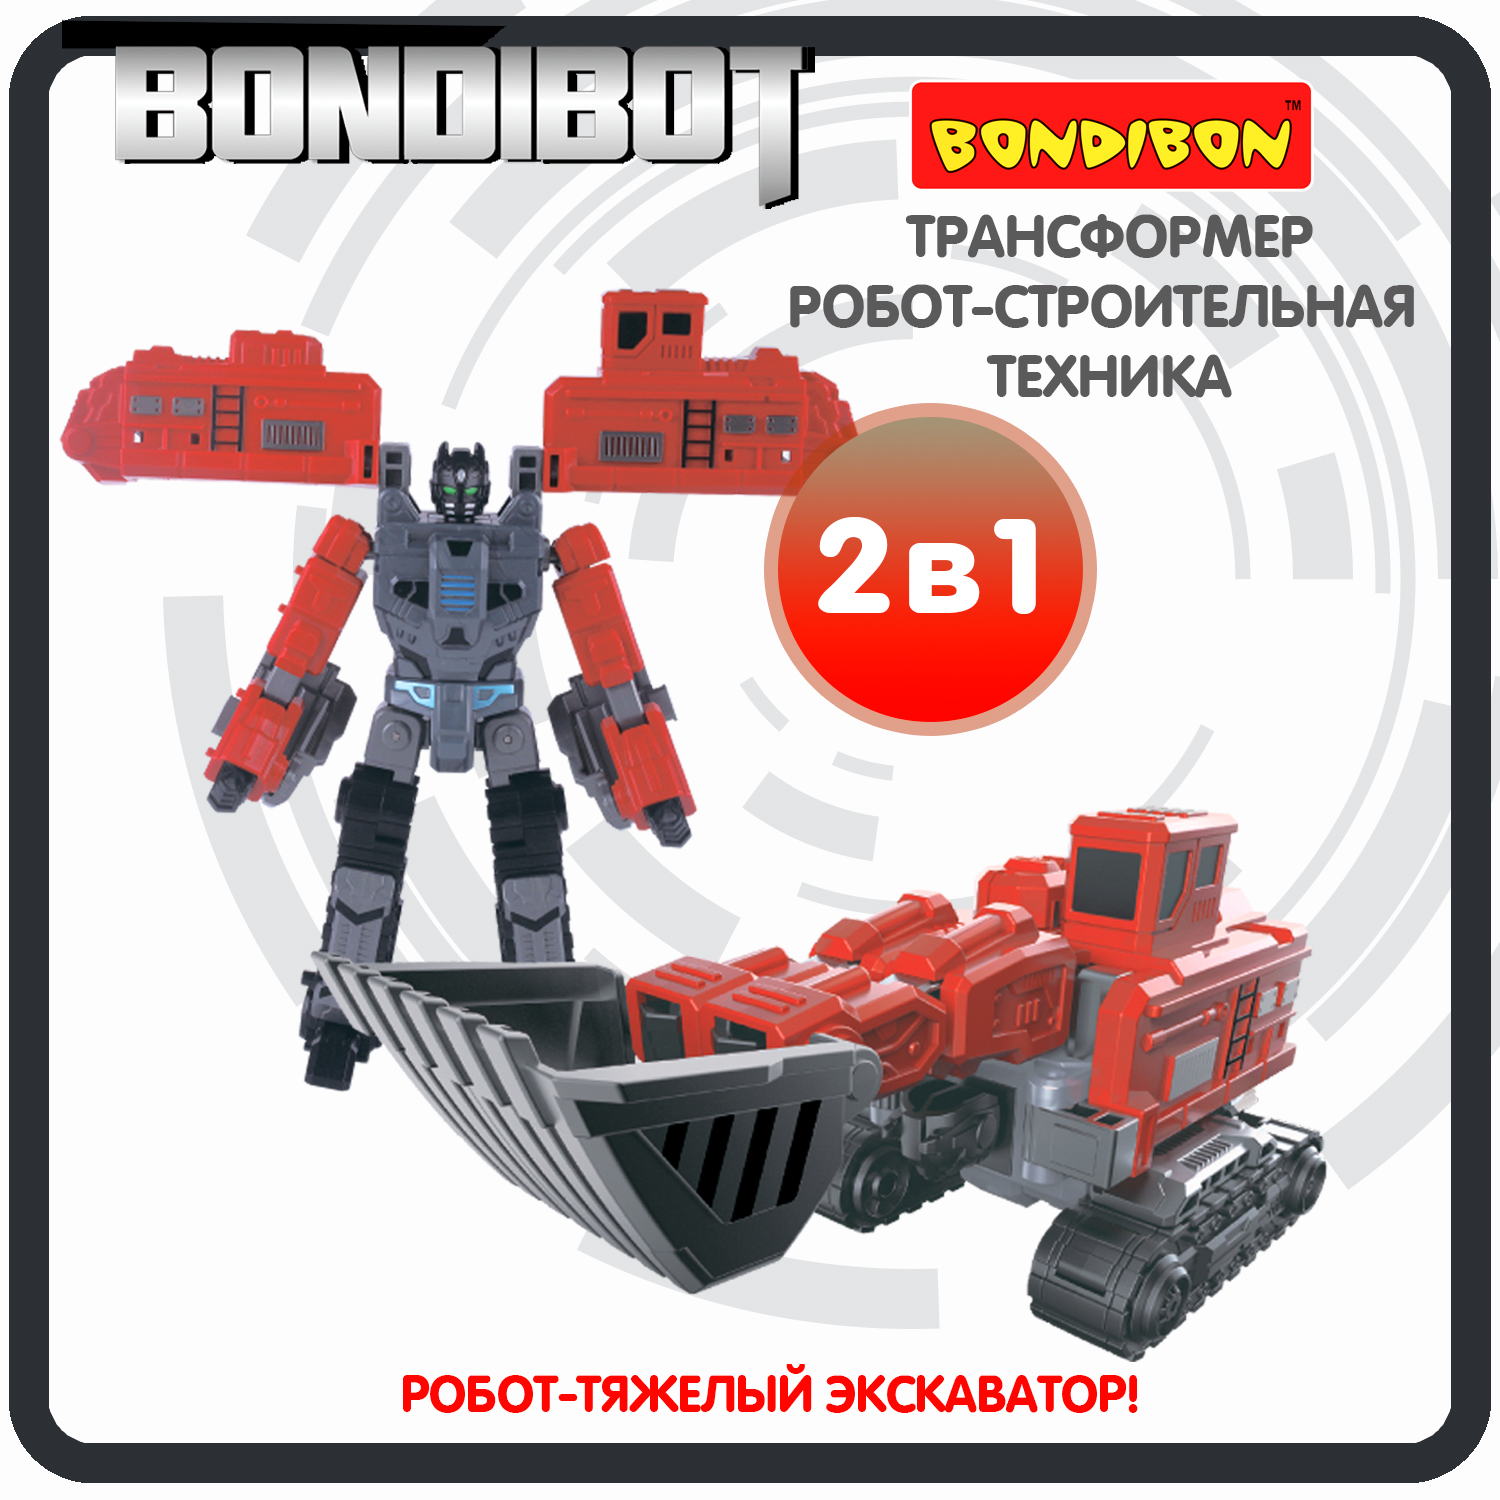 Трансформер робот-строительная техника, 2в1 BONDIBOT Bondibon, тяжёлый экскаватор / ВВ6057 трансформер робот строительная техника 2в1 bondibot bondibon самосвал вв6046